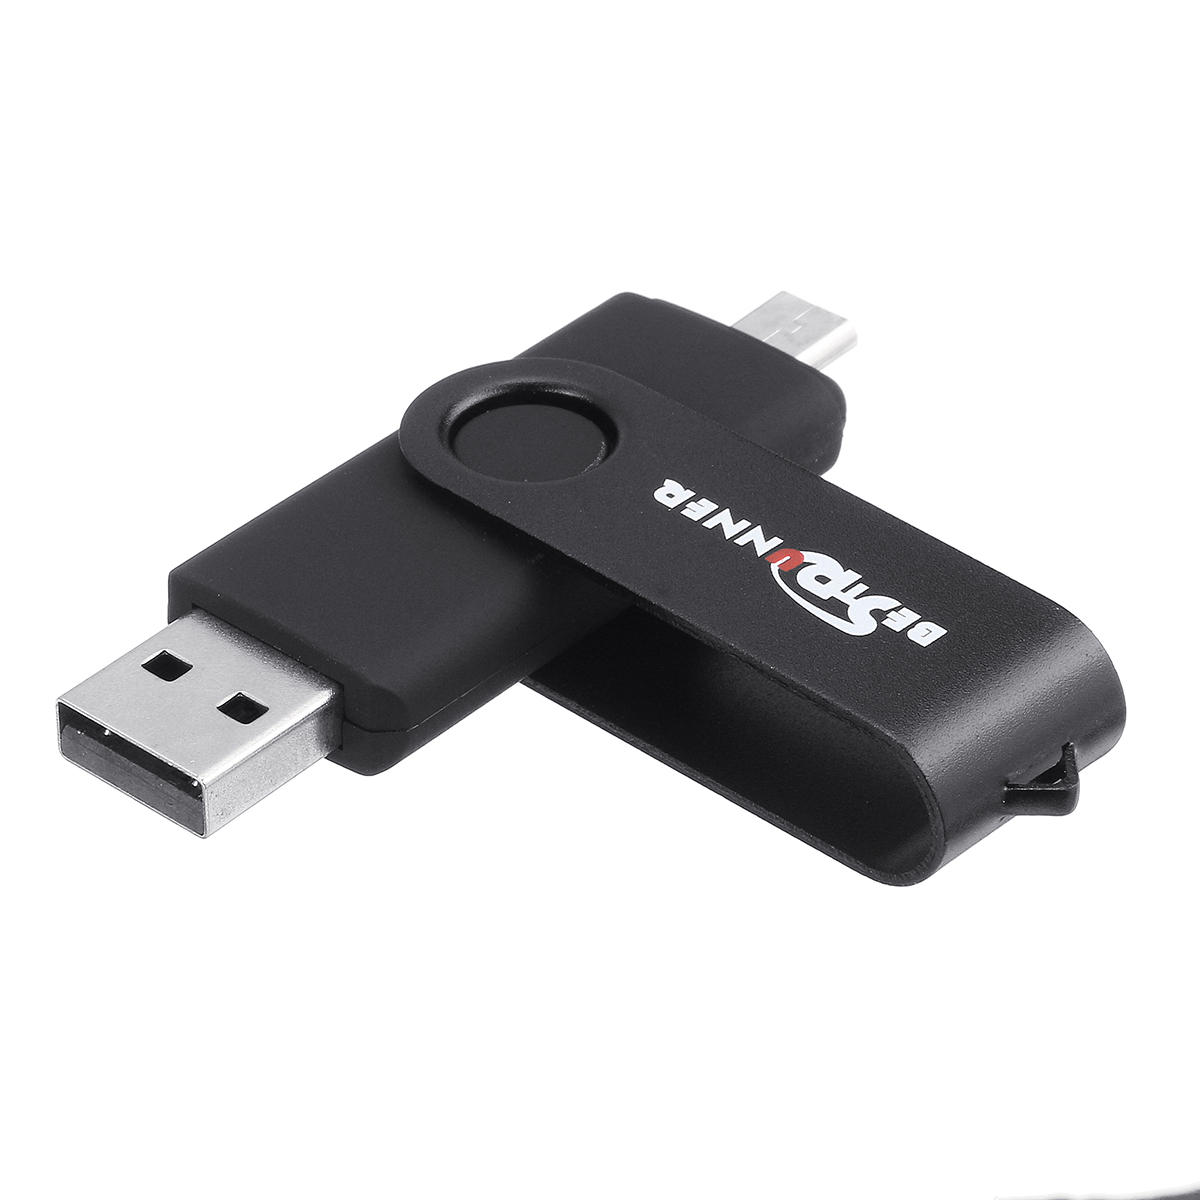 Bestrunner Type-C USB 2.0 64GB OTG Flash Drive U Disk 360 graden rotatie voor Type-C Smart Phone Tab